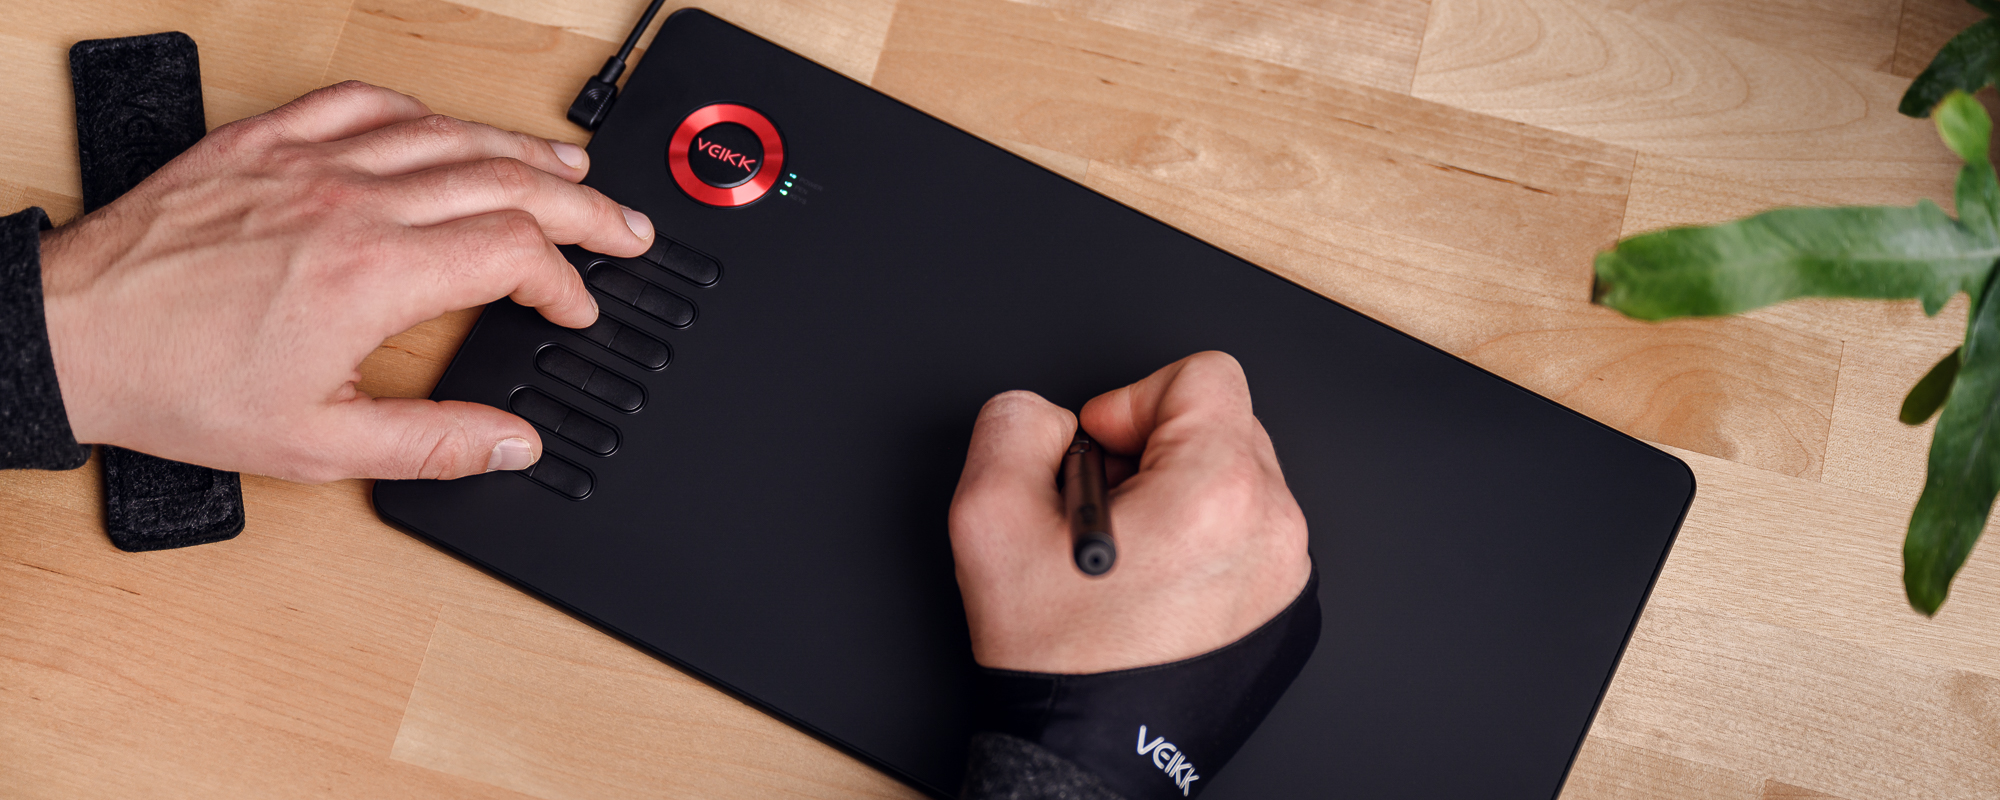 Foto - Veikk A15 Pro Grafiktablett auf hellbraunem Schreibtisch, die linke Hand des Mannes drückt die Funktionstaste, die rechte Hand bedient den Stift